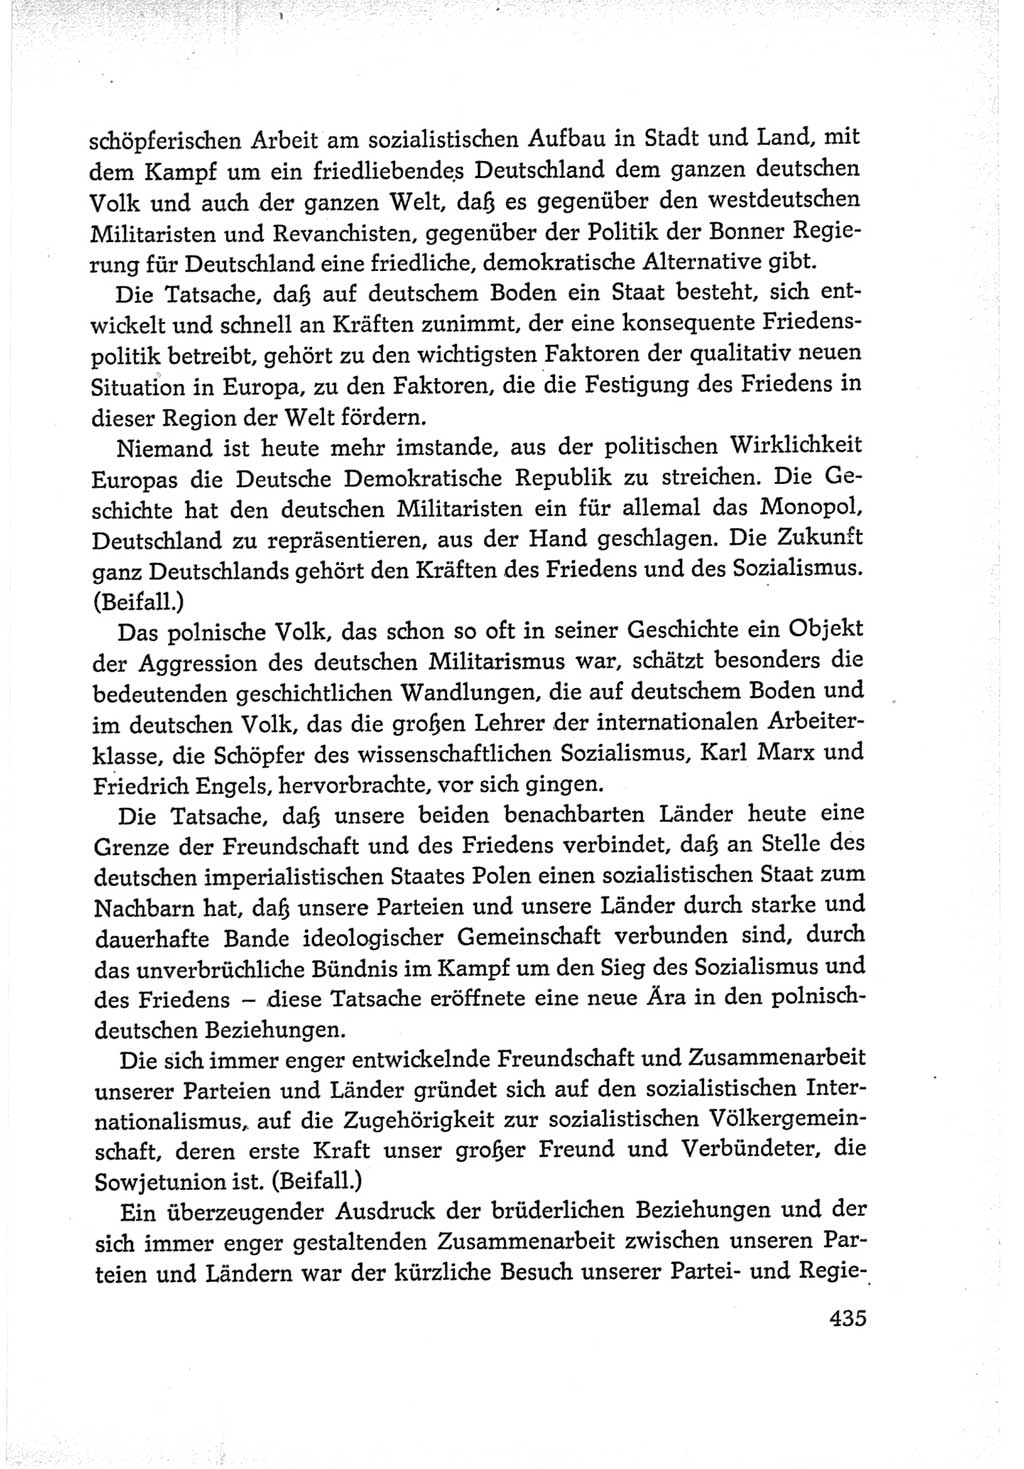 Protokoll der Verhandlungen des Ⅵ. Parteitages der Sozialistischen Einheitspartei Deutschlands (SED) [Deutsche Demokratische Republik (DDR)] 1963, Band Ⅰ, Seite 435 (Prot. Verh. Ⅵ. PT SED DDR 1963, Bd. Ⅰ, S. 435)